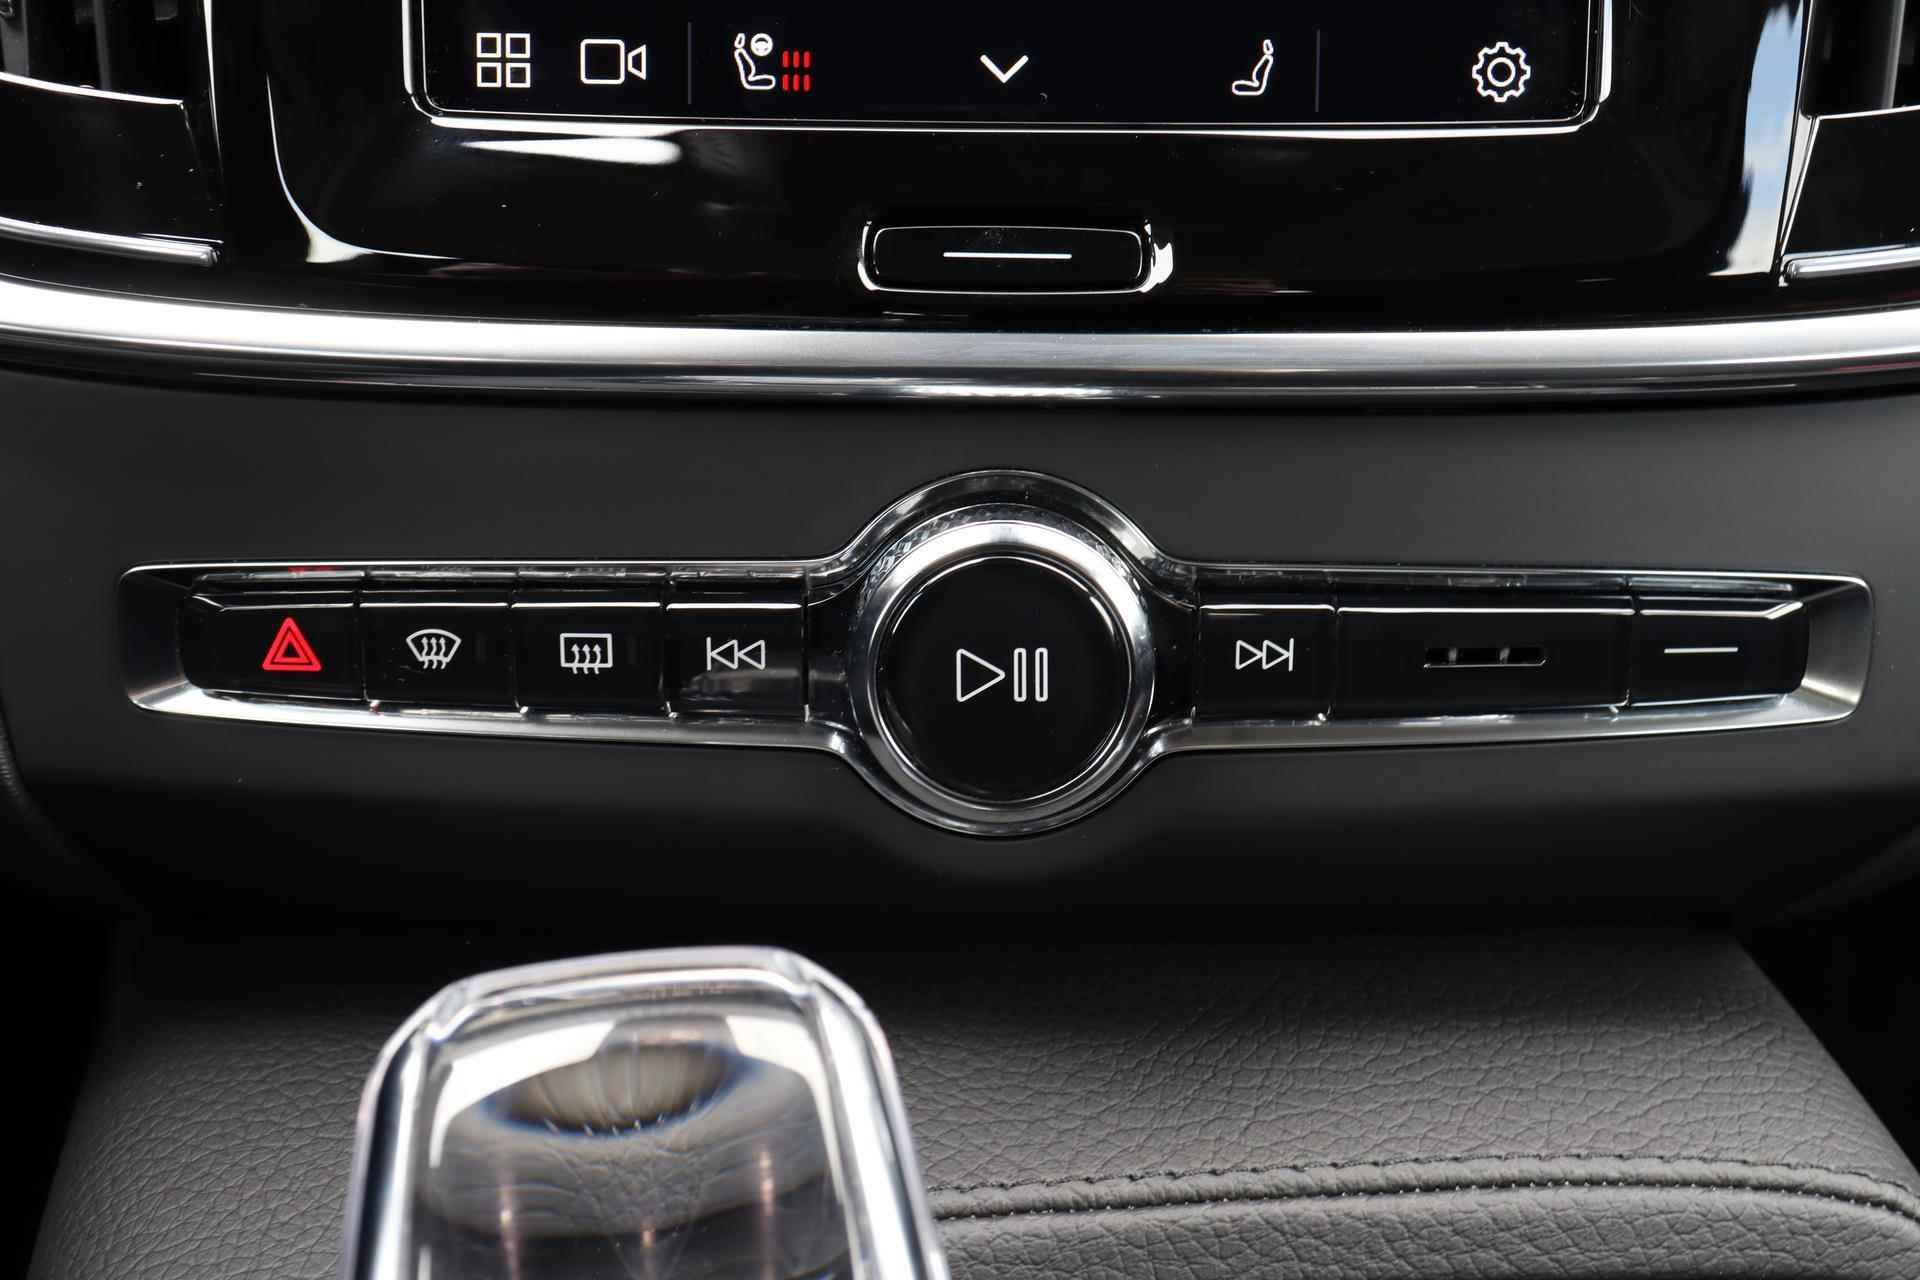 Volvo V90 T6 AWD Recharge Inscription - Panorama/schuifdak - IntelliSafe Assist & Surround - Harman/Kardon audio - Adaptieve LED koplampen - Parkeercamera achter - Verwarmde voorstoelen & stuur - Parkeersensoren voor & achter - Elektr. bedienb. voorstoelen met geheugen - Standkachel - 19' LMV - 13/33